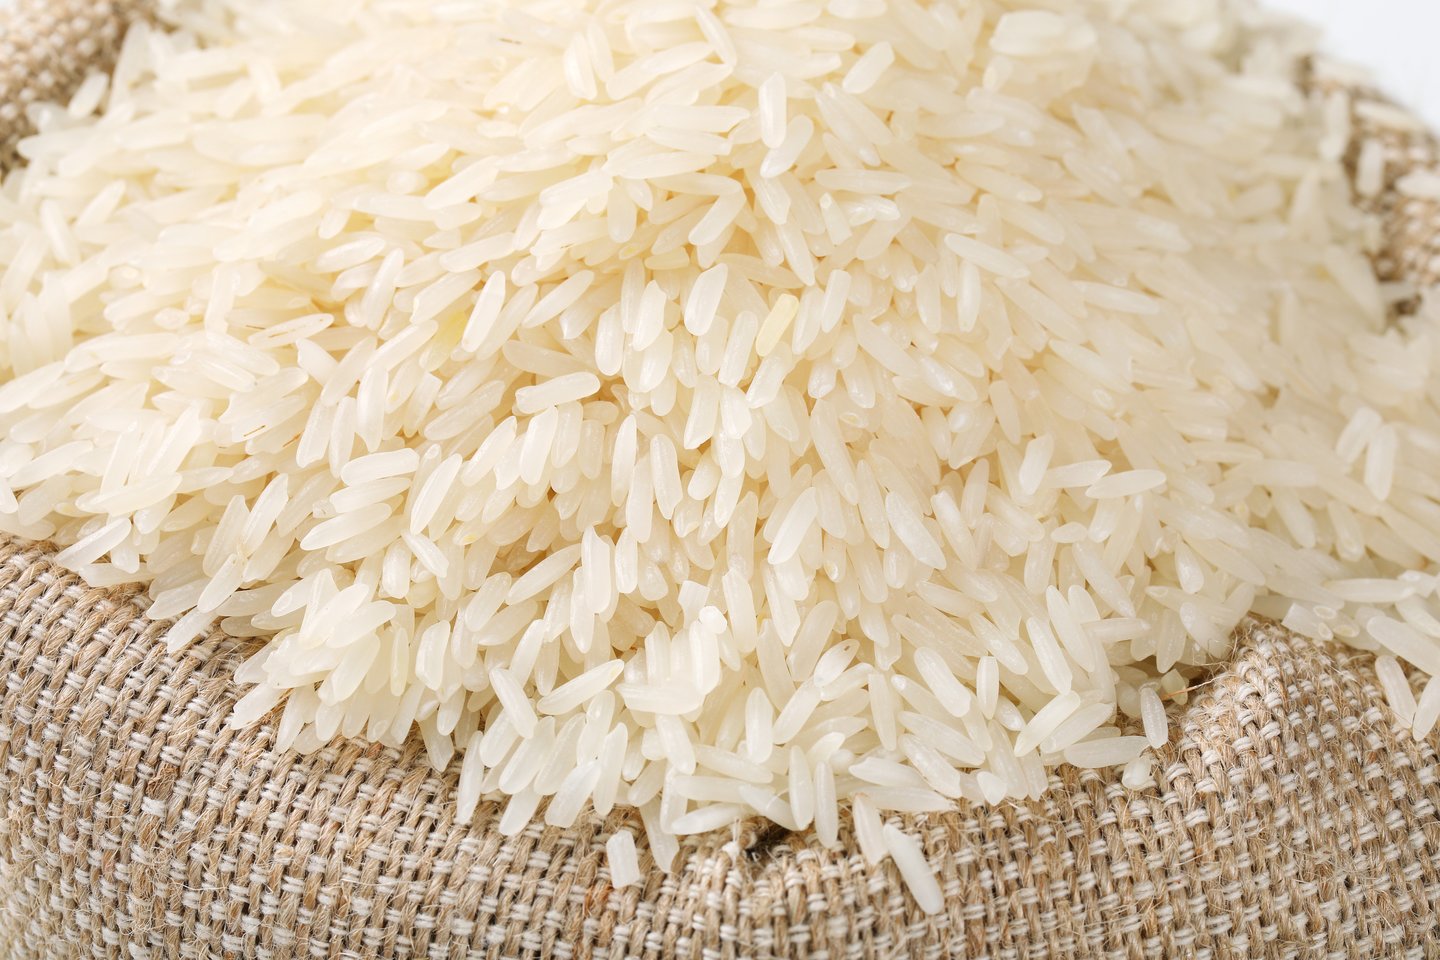  Greitai paruošiamuose ryžiuose plastiko dar daugiau - net 13 miligramų mikroplastiko 100 gramų ryžių.<br>Alena Dvorakova nuotr.